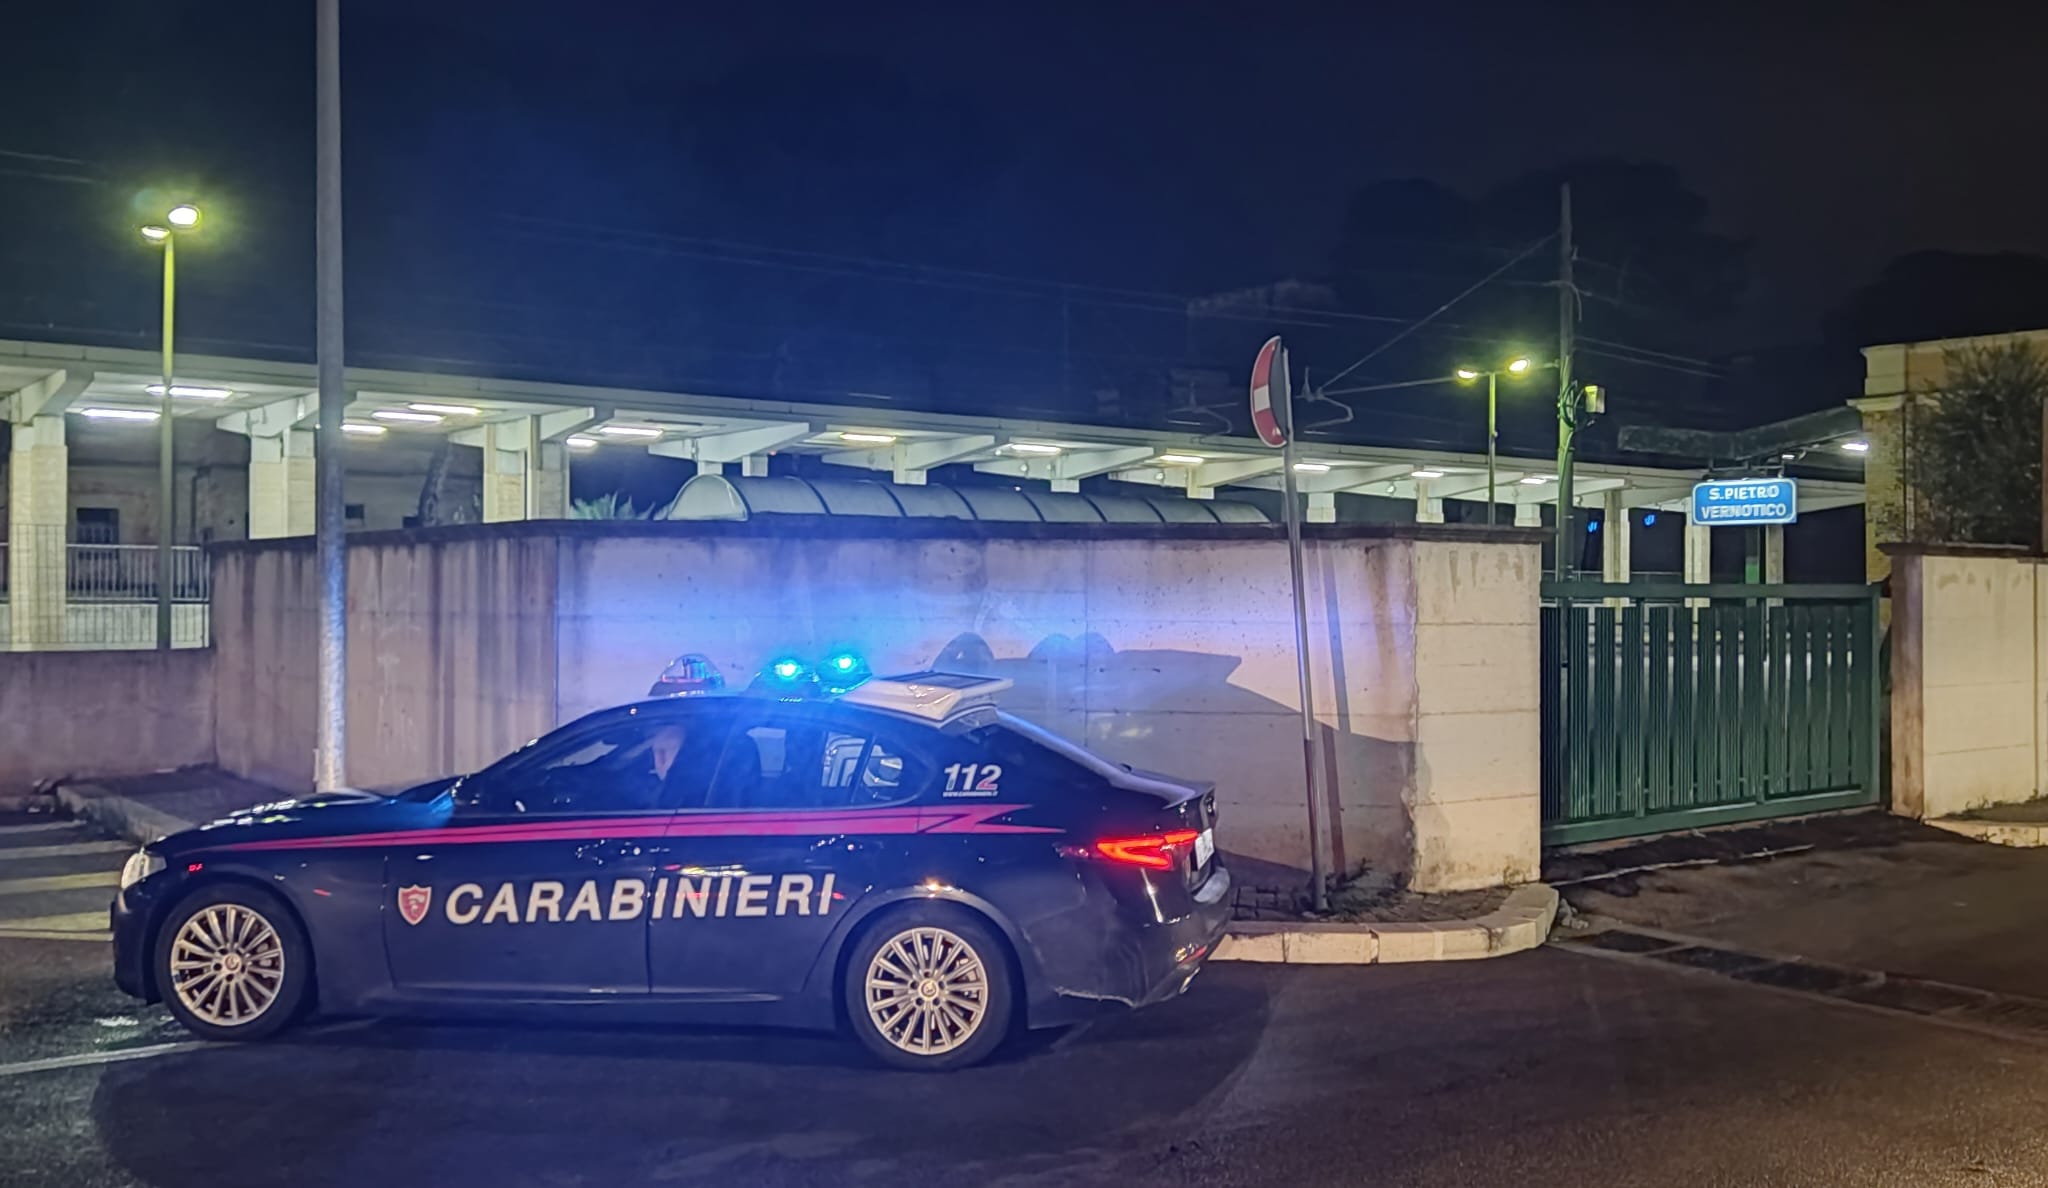 San Pietro V.co: I Carabinieri arrestano un 55enne trovato in possesso di sostanze stupefacenti